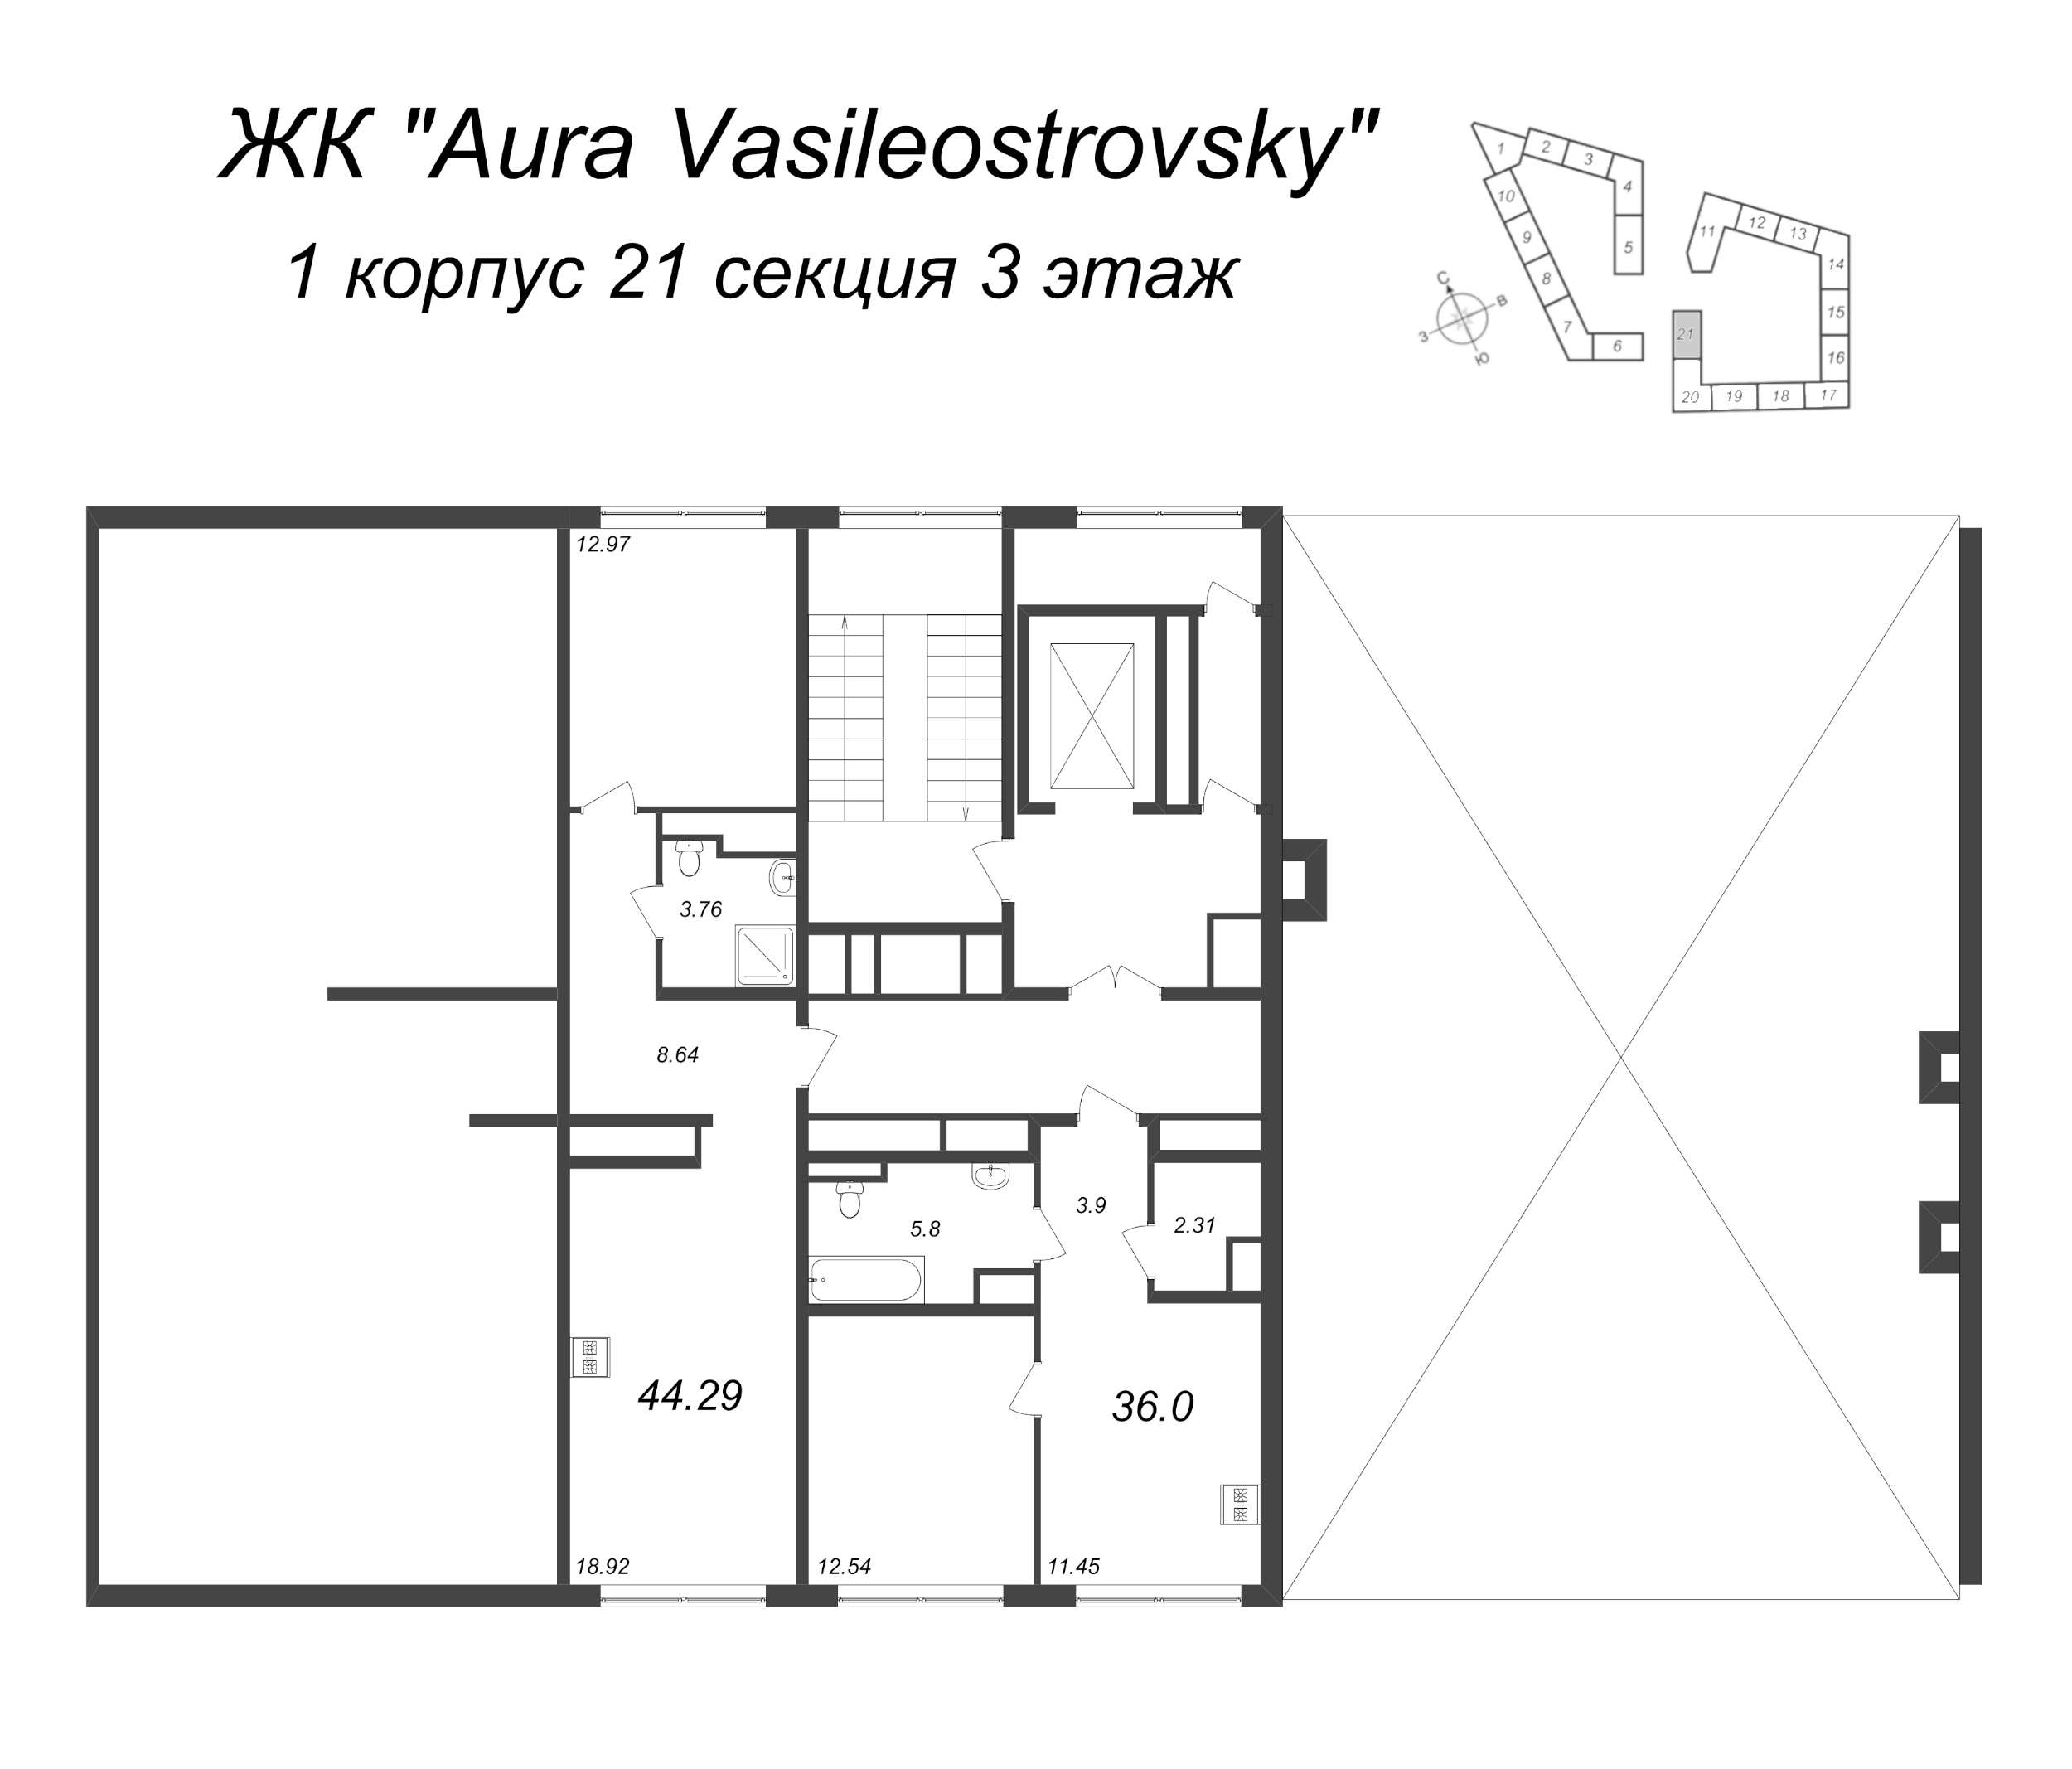 2-комнатная (Евро) квартира, 44.29 м² в ЖК "GloraX Premium Василеостровский" - планировка этажа